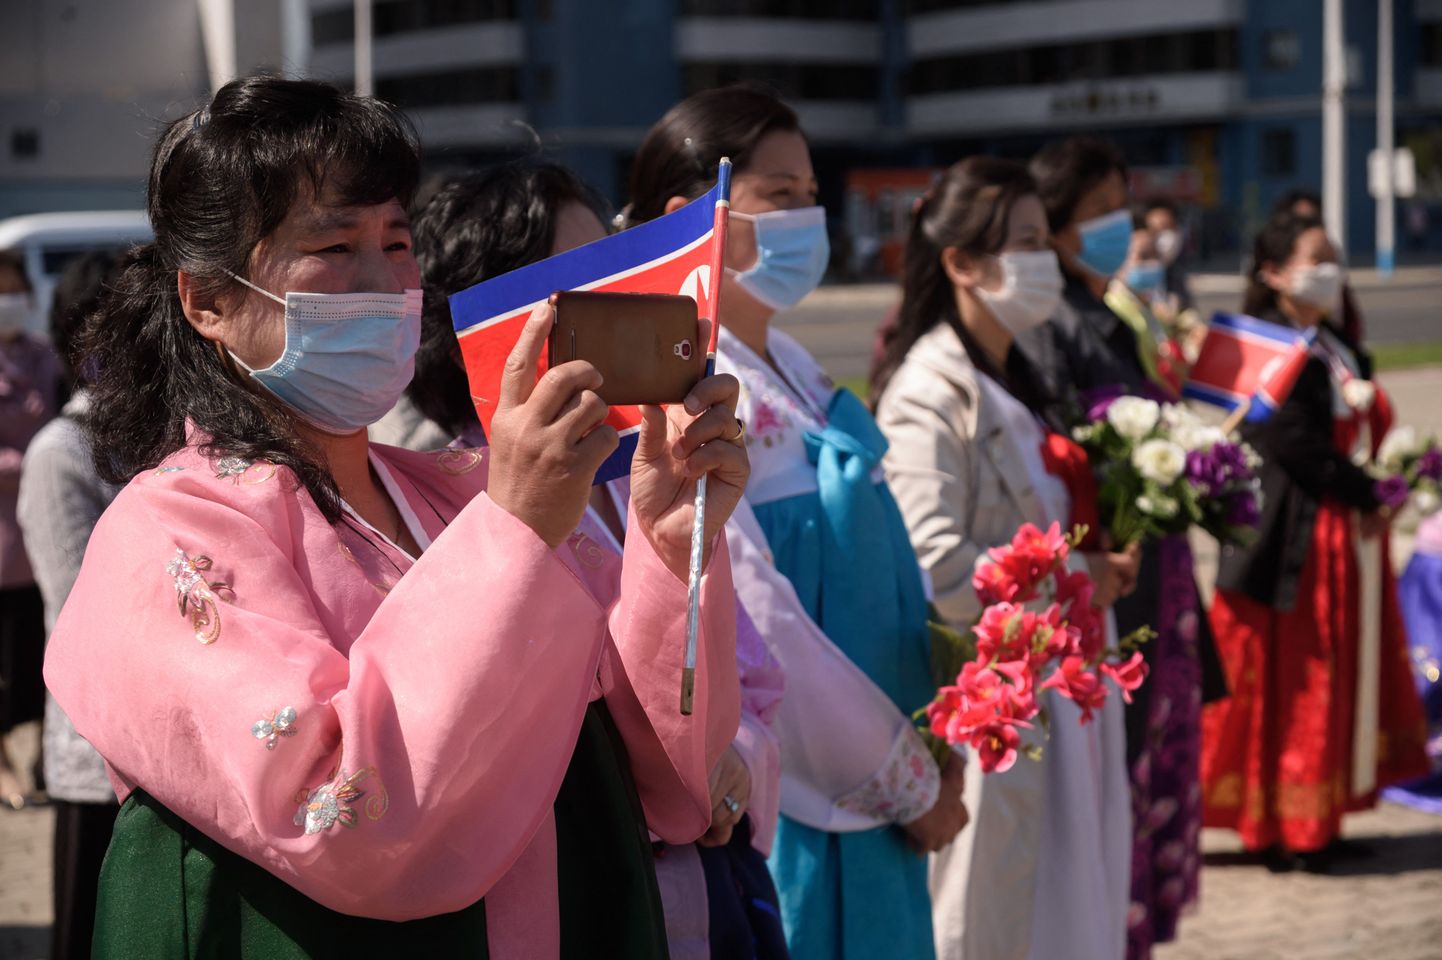 Traditsioonilises rahvariides naine pildistab nutitelefoniga Põhja-Korea Revolutsioonilise Armee paraadi. Kuus inimest kümnest kasutavad Põhja-Koreas praegu mobiiltelefoni. Pilt on illustreeriv.